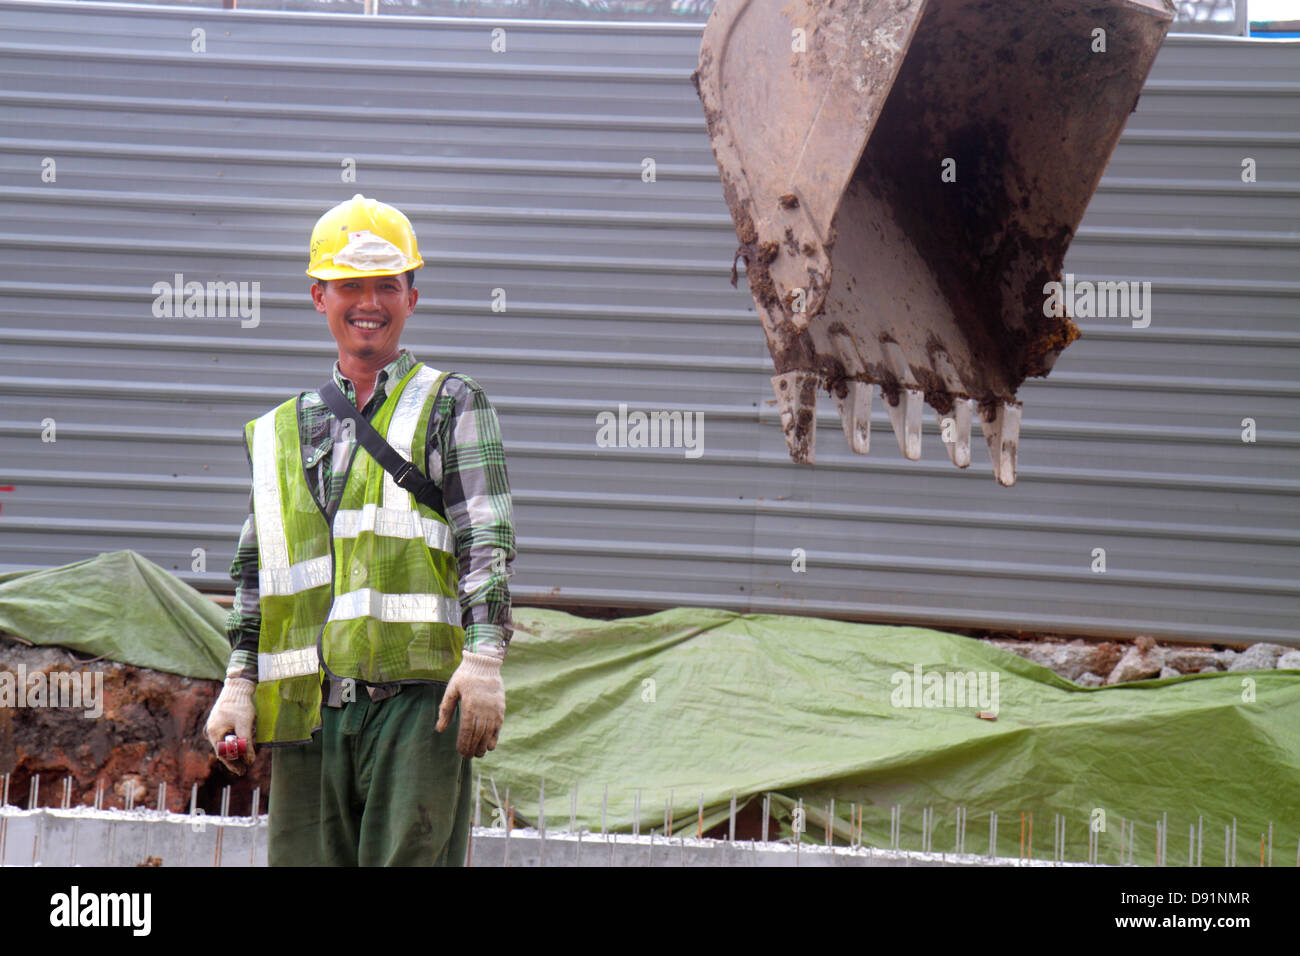 Singapore Jalan Besar, uomo asiatico uomini maschio, elmetto, sotto costruzione nuovo cantiere costruttore, lavoratore, lavoratori, costruzione, sito, pala, lavoro, lavoro, lavoro, si Foto Stock